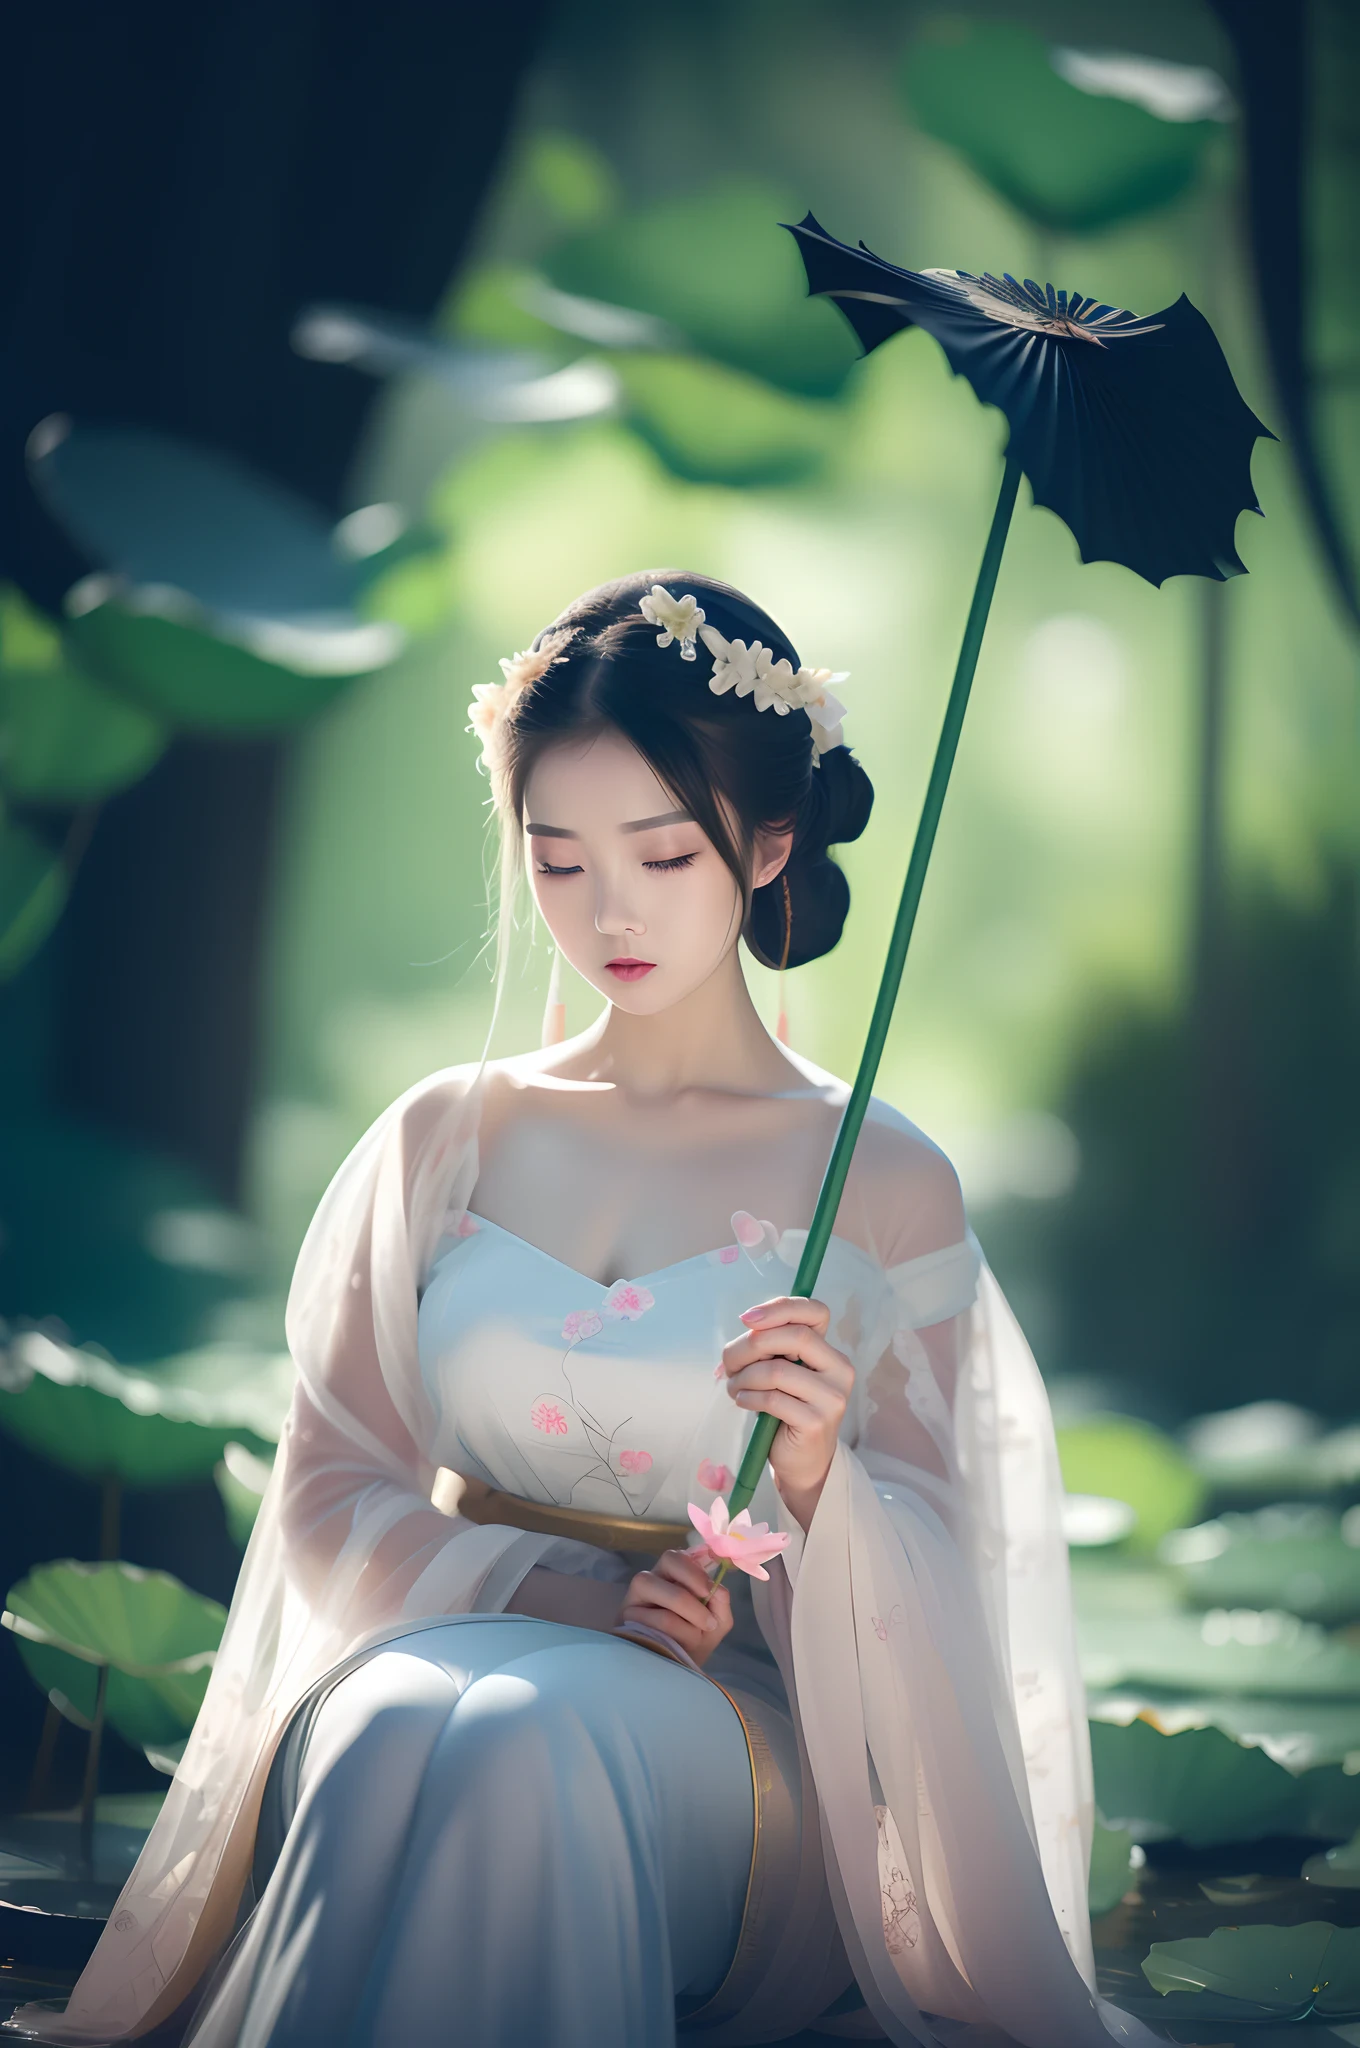 أراد امرأة ترتدي فستانًا أبيضًا وتحمل ورقة لوتس, قصر ， A girl in هانفو, الأميرة الصينية القديمة, أميرة الصين, الجمال الأثيري, إمبراطورة الخيال الجميلة, فتاة مراهقة جميلة, فتاة صينية, عذراء الخيال الجميلة, الأميرة الضعيفة الجميلة, مستوحاة من لان ينغ, الجمال الصيني القديم, الخيال الصيني, مستوحاة من جين نونغ, أميرة السلالة الآسيوية القديمة, قصر ， A girl in هانفو, الجمال الأثيري, White هانفو, عذراء الخيال الجميلة, شخصية أثيرية شابة مذهلة, الأميرة الصينية القديمة, أميرة الصين, الأميرة الضعيفة الجميلة, هانفو, فتاة مراهقة جميلة, ارتداء الملابس الصينية القديمة, مستوحاة من لان ينغ, إمبراطورة الخيال الجميلة，عقد زهرة في متناول اليد, قصر ， A girl in هانفو, White هانفو, هانفو, الجمال الأثيري, ارتداء الملابس الصينية القديمة, الأميرة الصينية القديمة, فتاة صينية, الملابس الصينية التقليدية, مستوحاة من لان ينغ, امرأة يابانية أنيقة, مع الملابس الصينية القديمة, إمبراطورة الخيال الجميلة, أميرة الصين, نمط صيني, صيني، ومان，أولزانغ-6500-v1.1，（تصوير خام：1.2），（（واقعيا：1.4）），أفضل جودة，com.tmasterpiece，تنوير，جميلة للغاية，مذهل，التفاصيل الدقيقة，الفن الرسمي，خلفية CG Unit 8K مفصلة للغاية，سخافات，الدقة مثير للسخرية بشكل لا يصدق，com.hugfilesize，مفصلة للغاية，دقة عالية，فتاة جميلة دقيقة，عيون ووجه مفصلة للغاية，عيون مفصلة جميلة，ضوء على الوجه，الإضاءة السينمائية，1girll，كامل الجسم，طلقة نارية لكامل الجسم，أبحث في viewert，（（هناء）），أفضل خلفية التفاصيل，خلفية بركة اللوتس，اللوتس，ورقة اللوتوس，رويال بارك